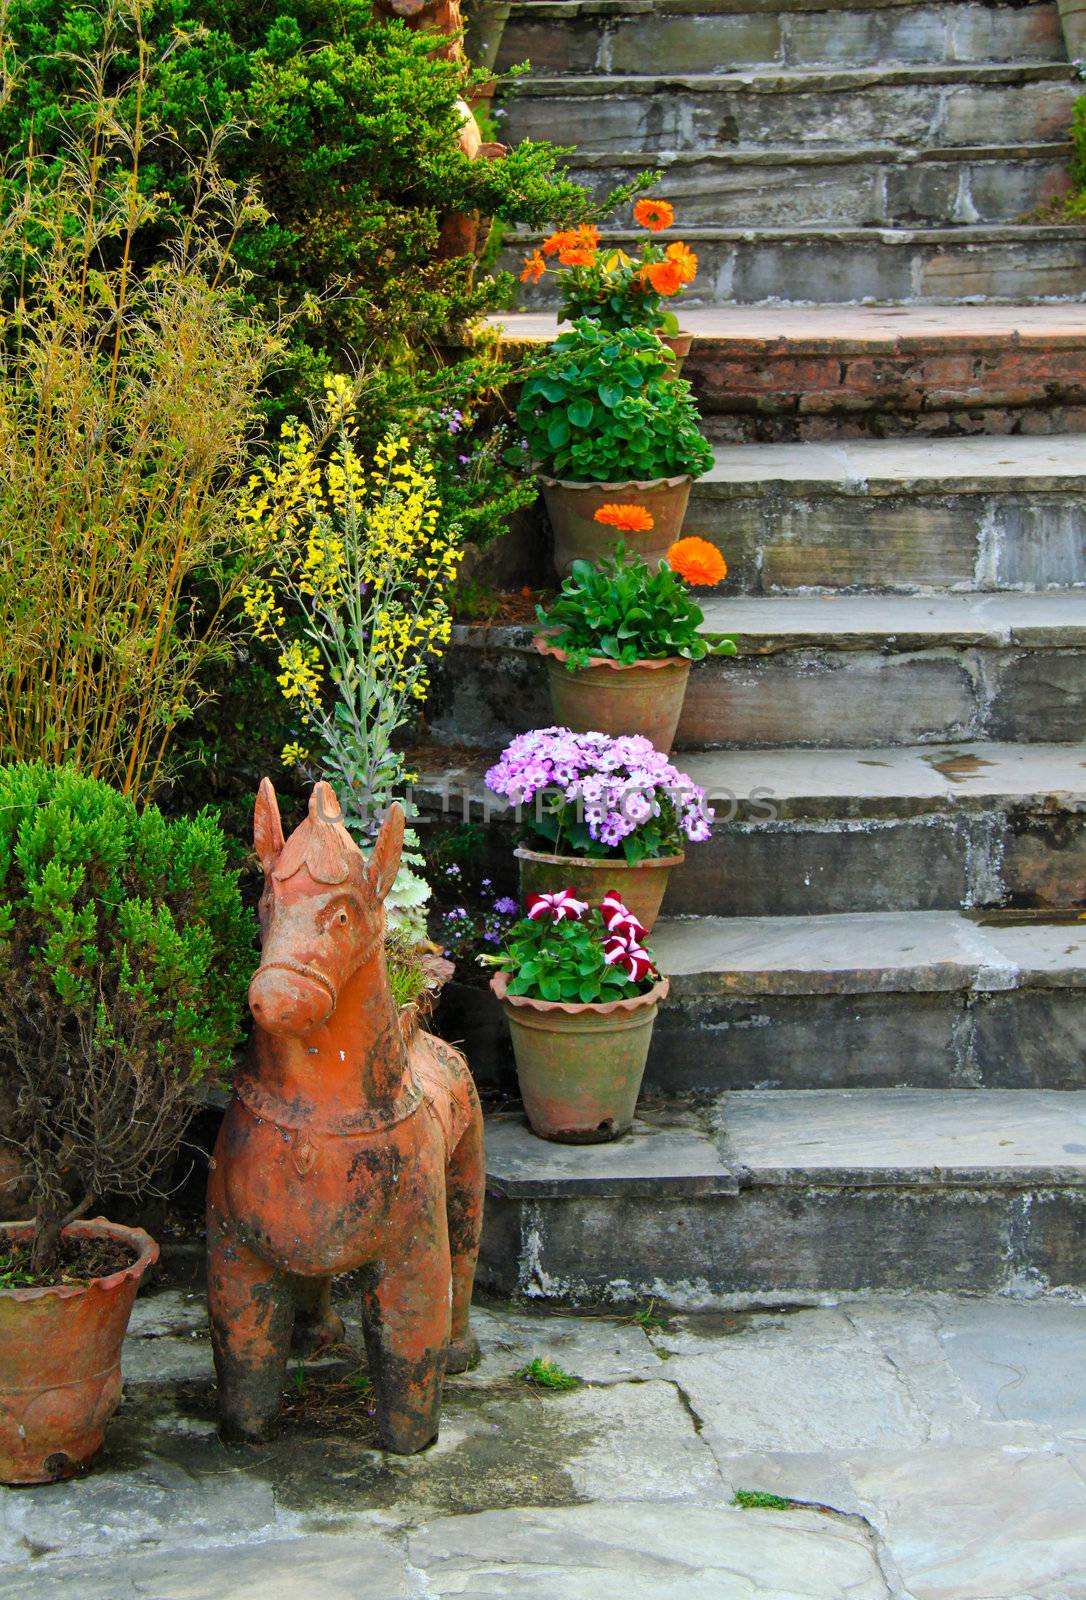 Ornament stair in garden by nuchylee